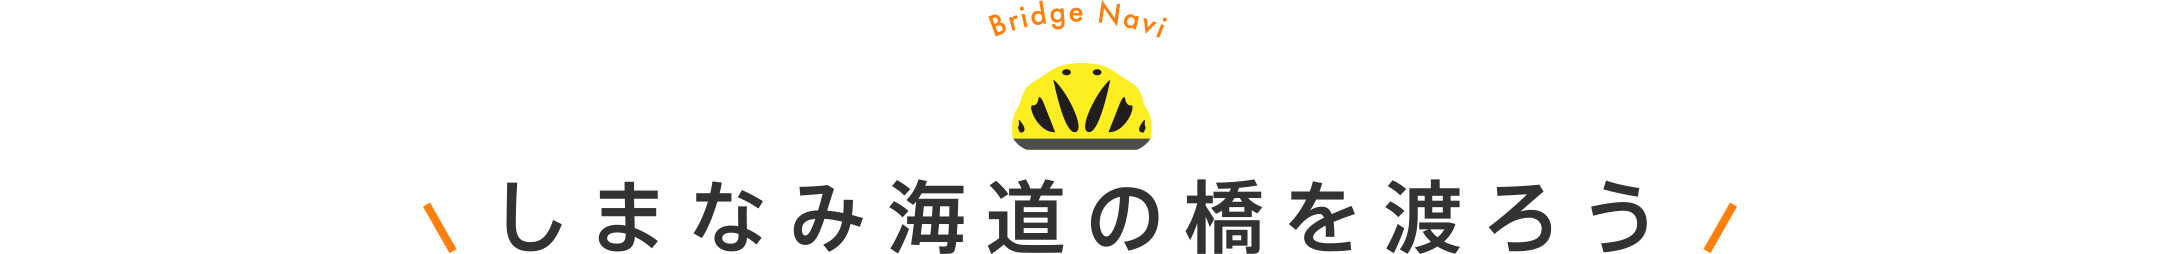 しまなみ海道の橋を渡ろう